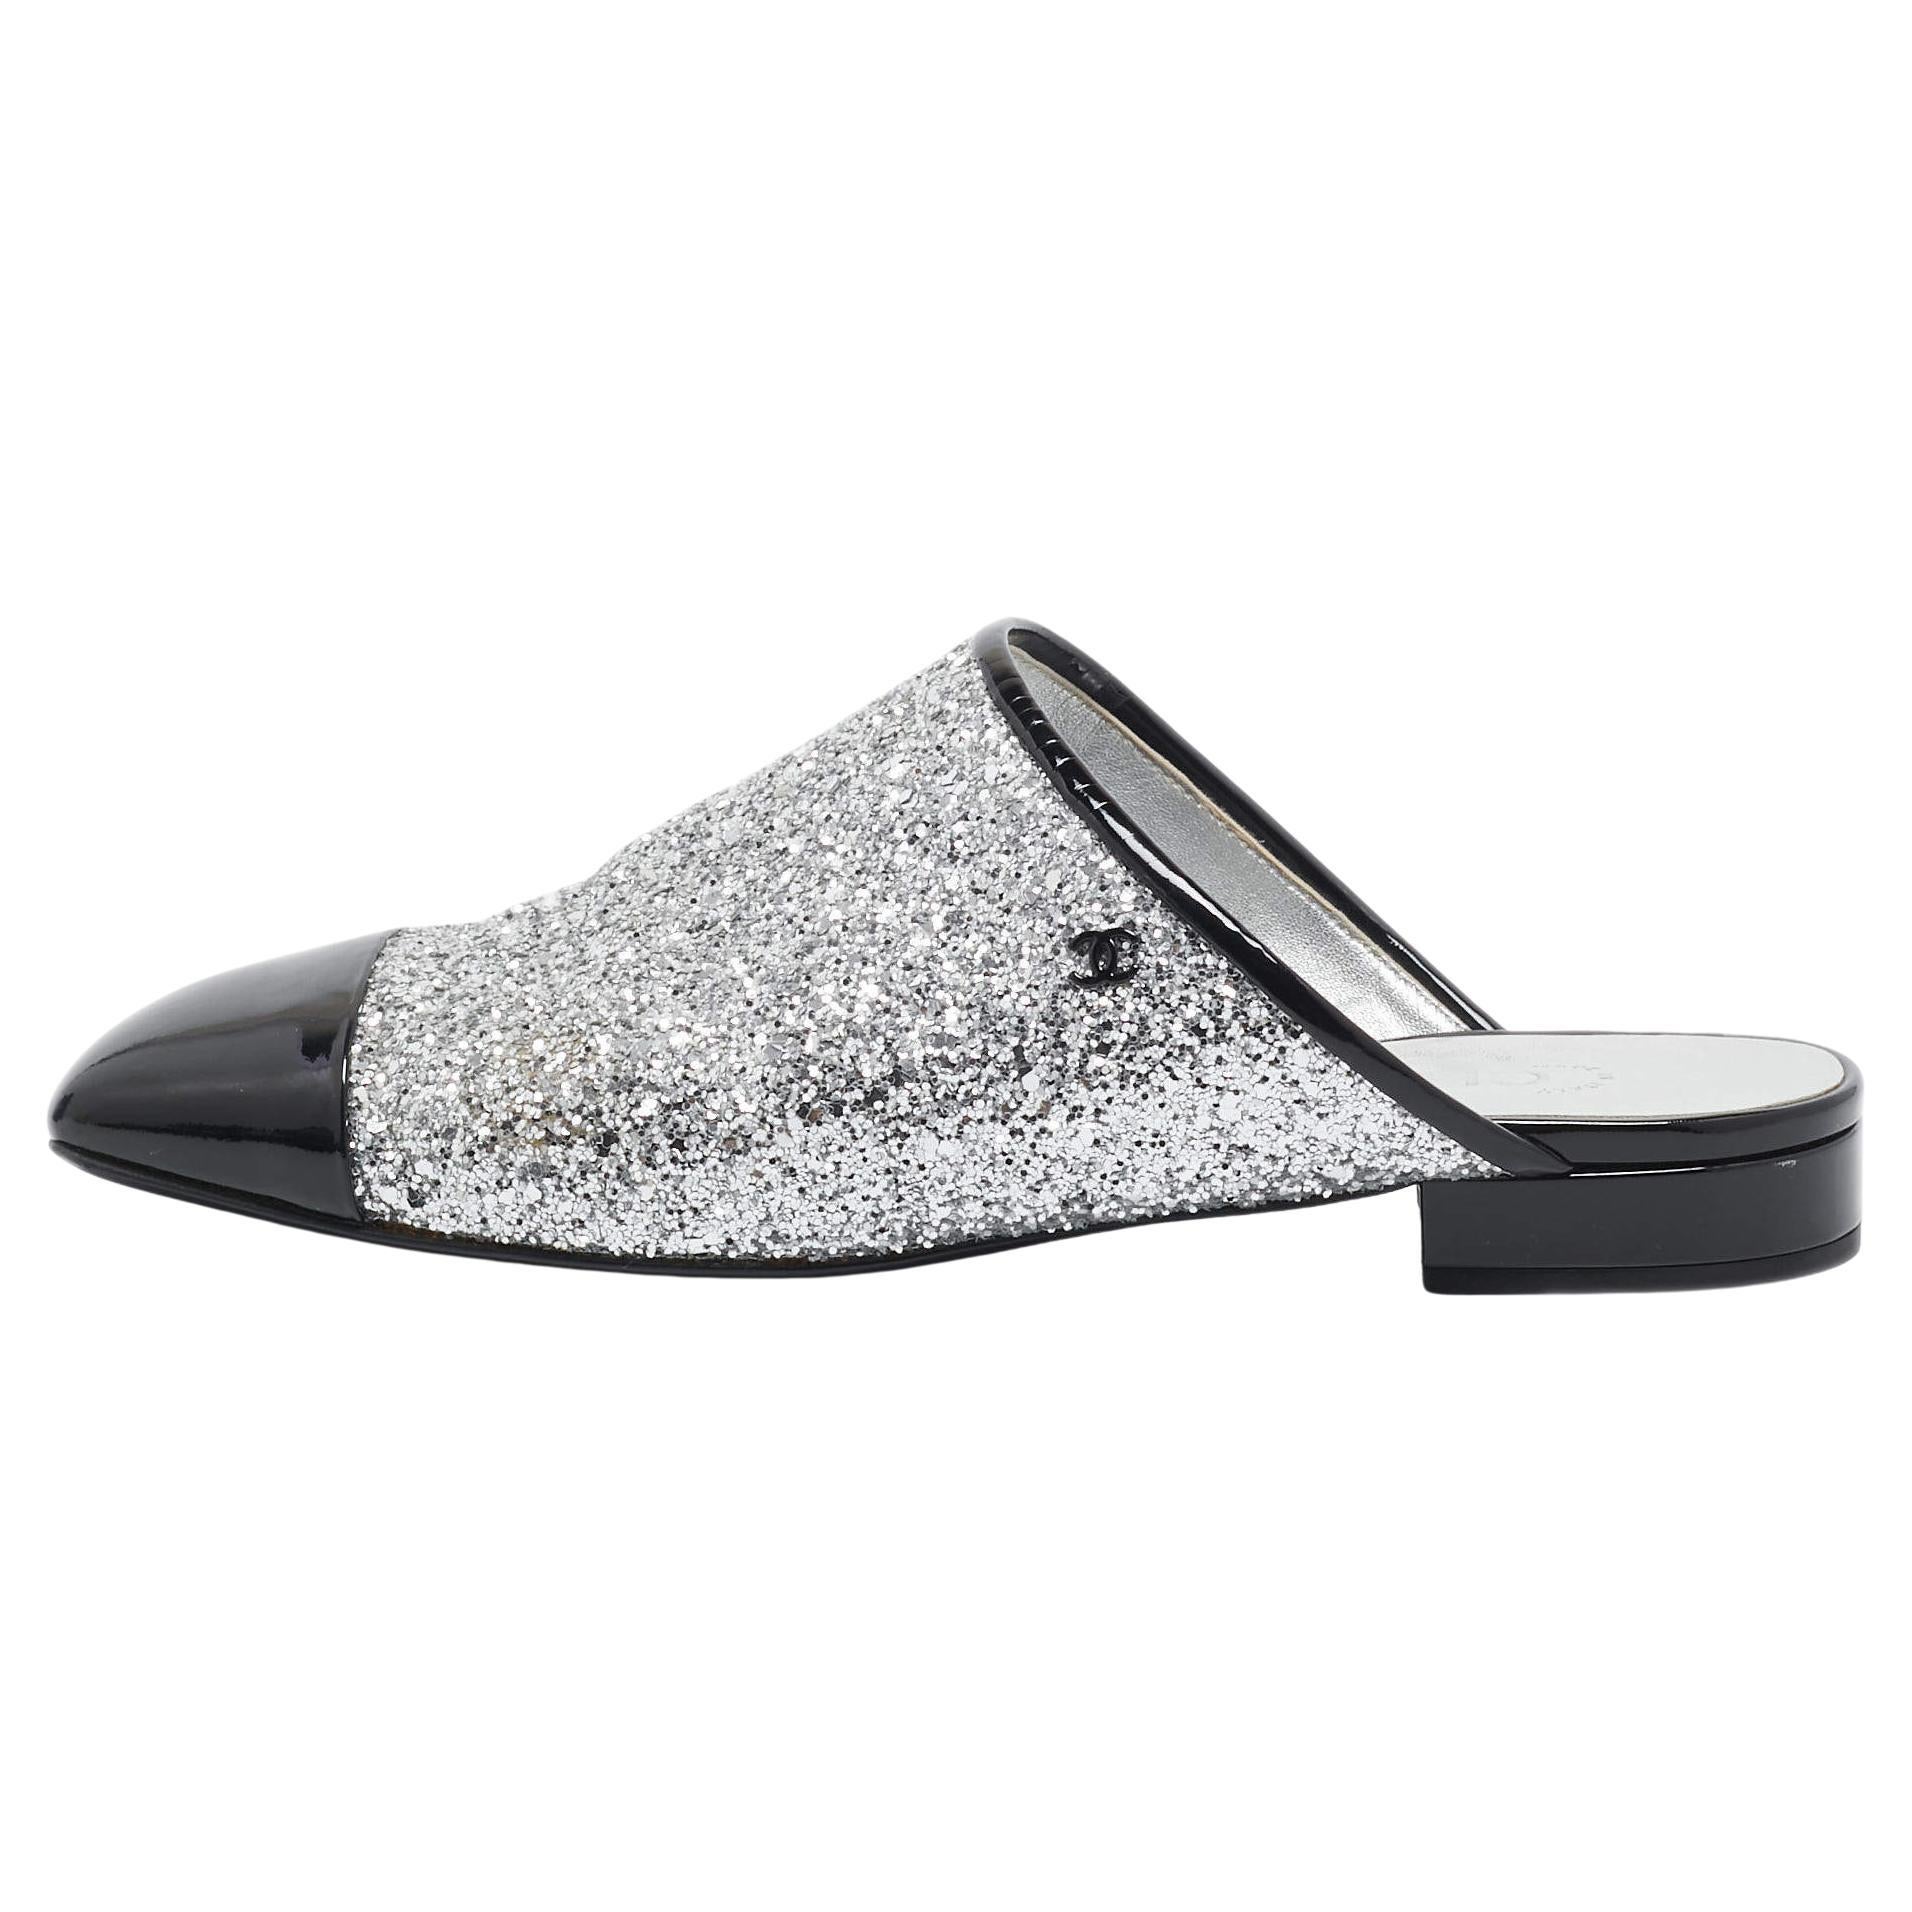 Chanel Silver/Black Coarse Glitter and Patent Cap Toe CC Mules Size 40